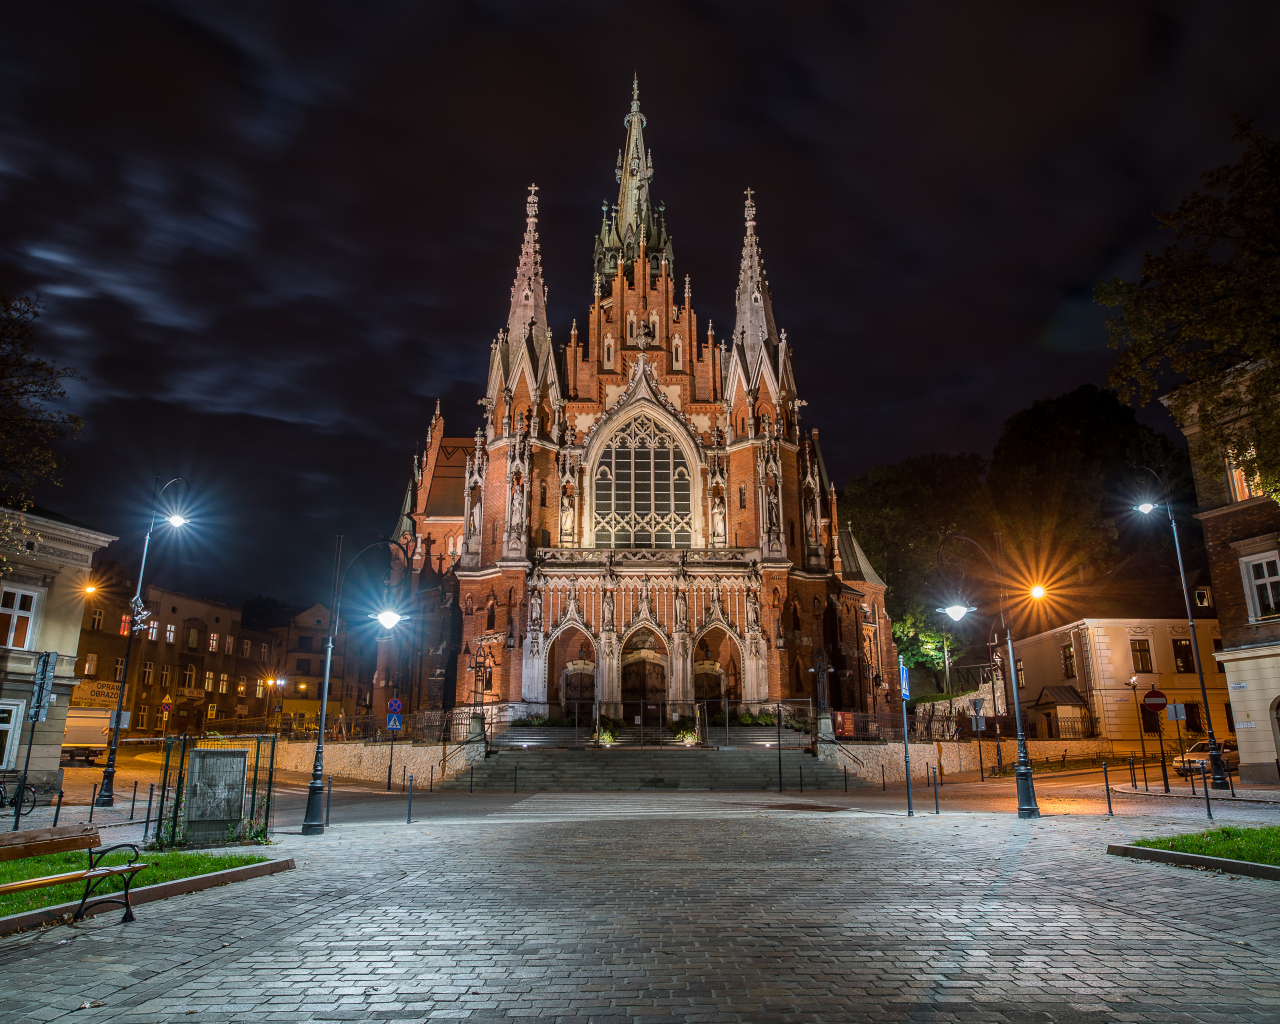 Церковь St. Joseph's Church в свете ночных фонарей, Краков. Польша